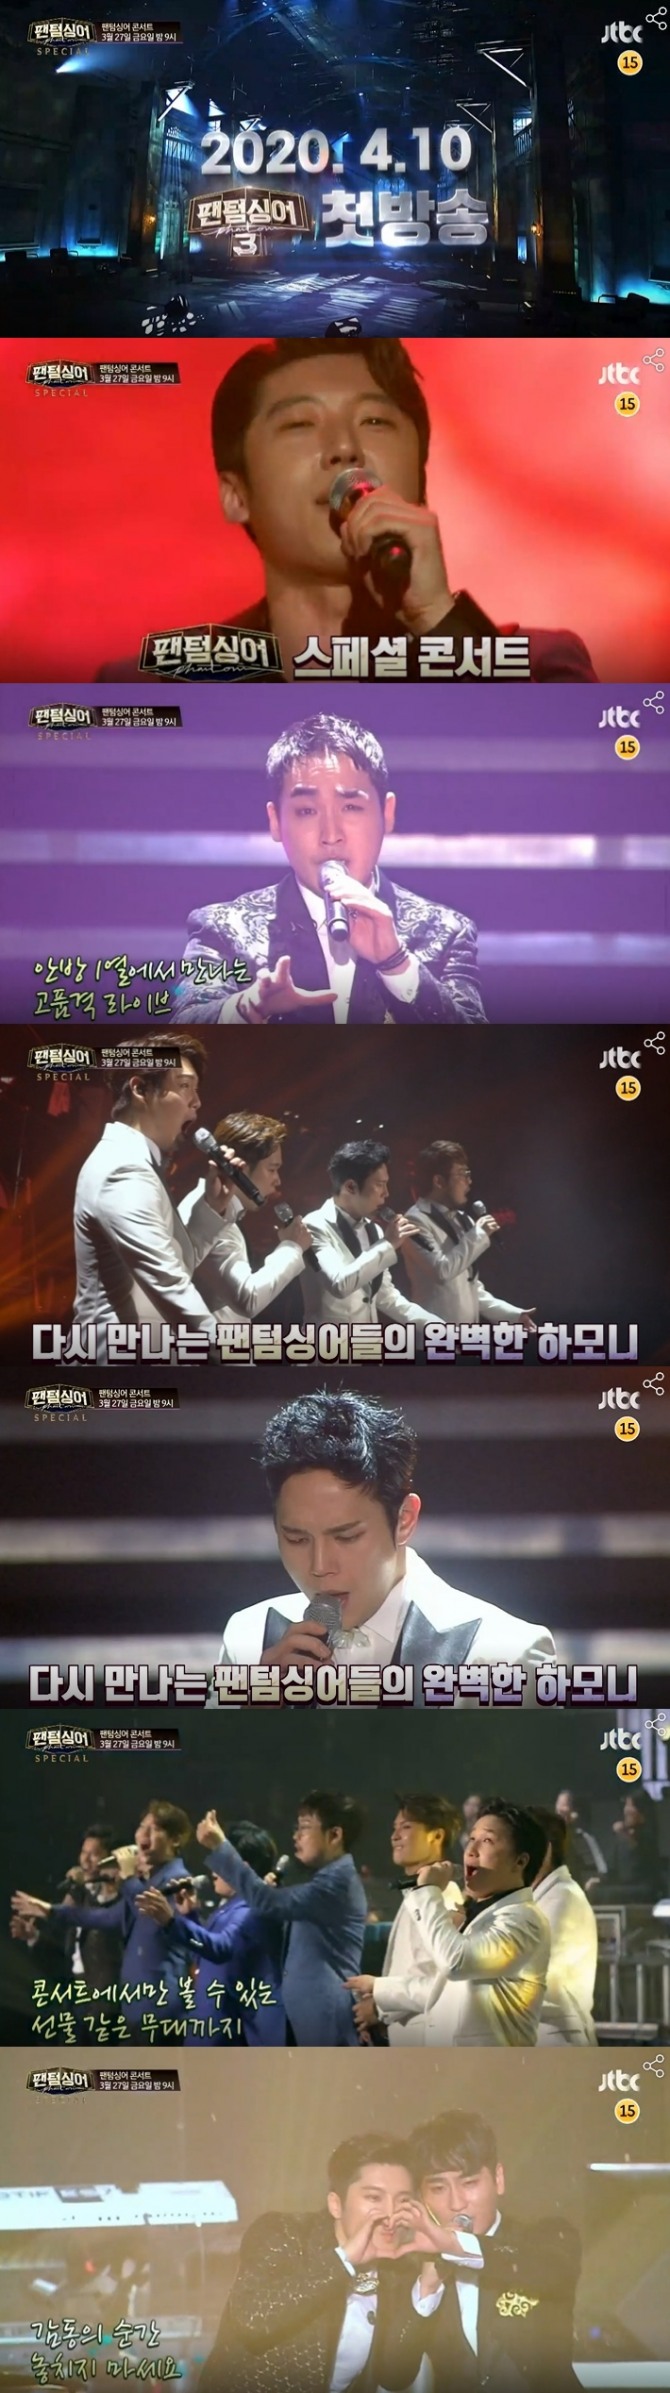 JTBC가 4월 10일로 예정된'팬텀싱어3' 본방송에 앞서 '판텀싱어 스페셜 콘서트'를 27일 편성해 분위기를 띄운다. 사진=JTBC 영상 캡처 